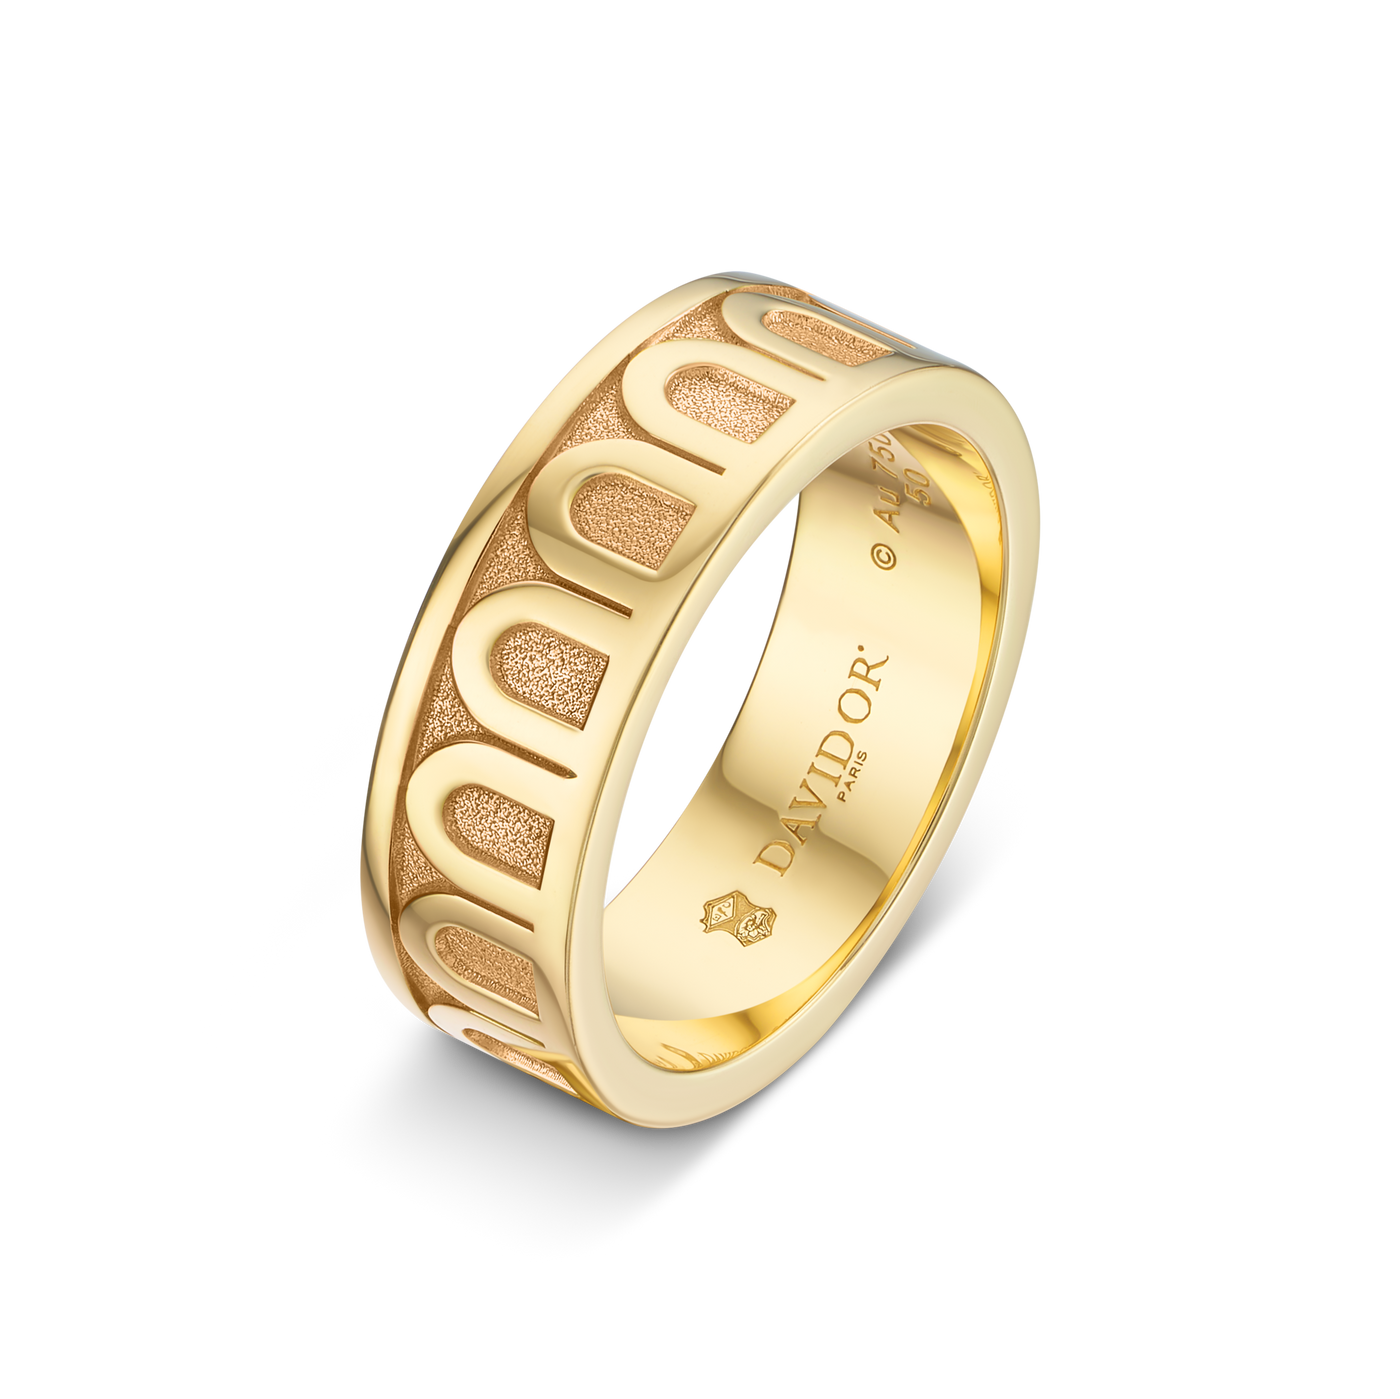 L'Arc de DAVIDOR Ring MM, 18k Yellow Gold with Satin Finish - DAVIDOR